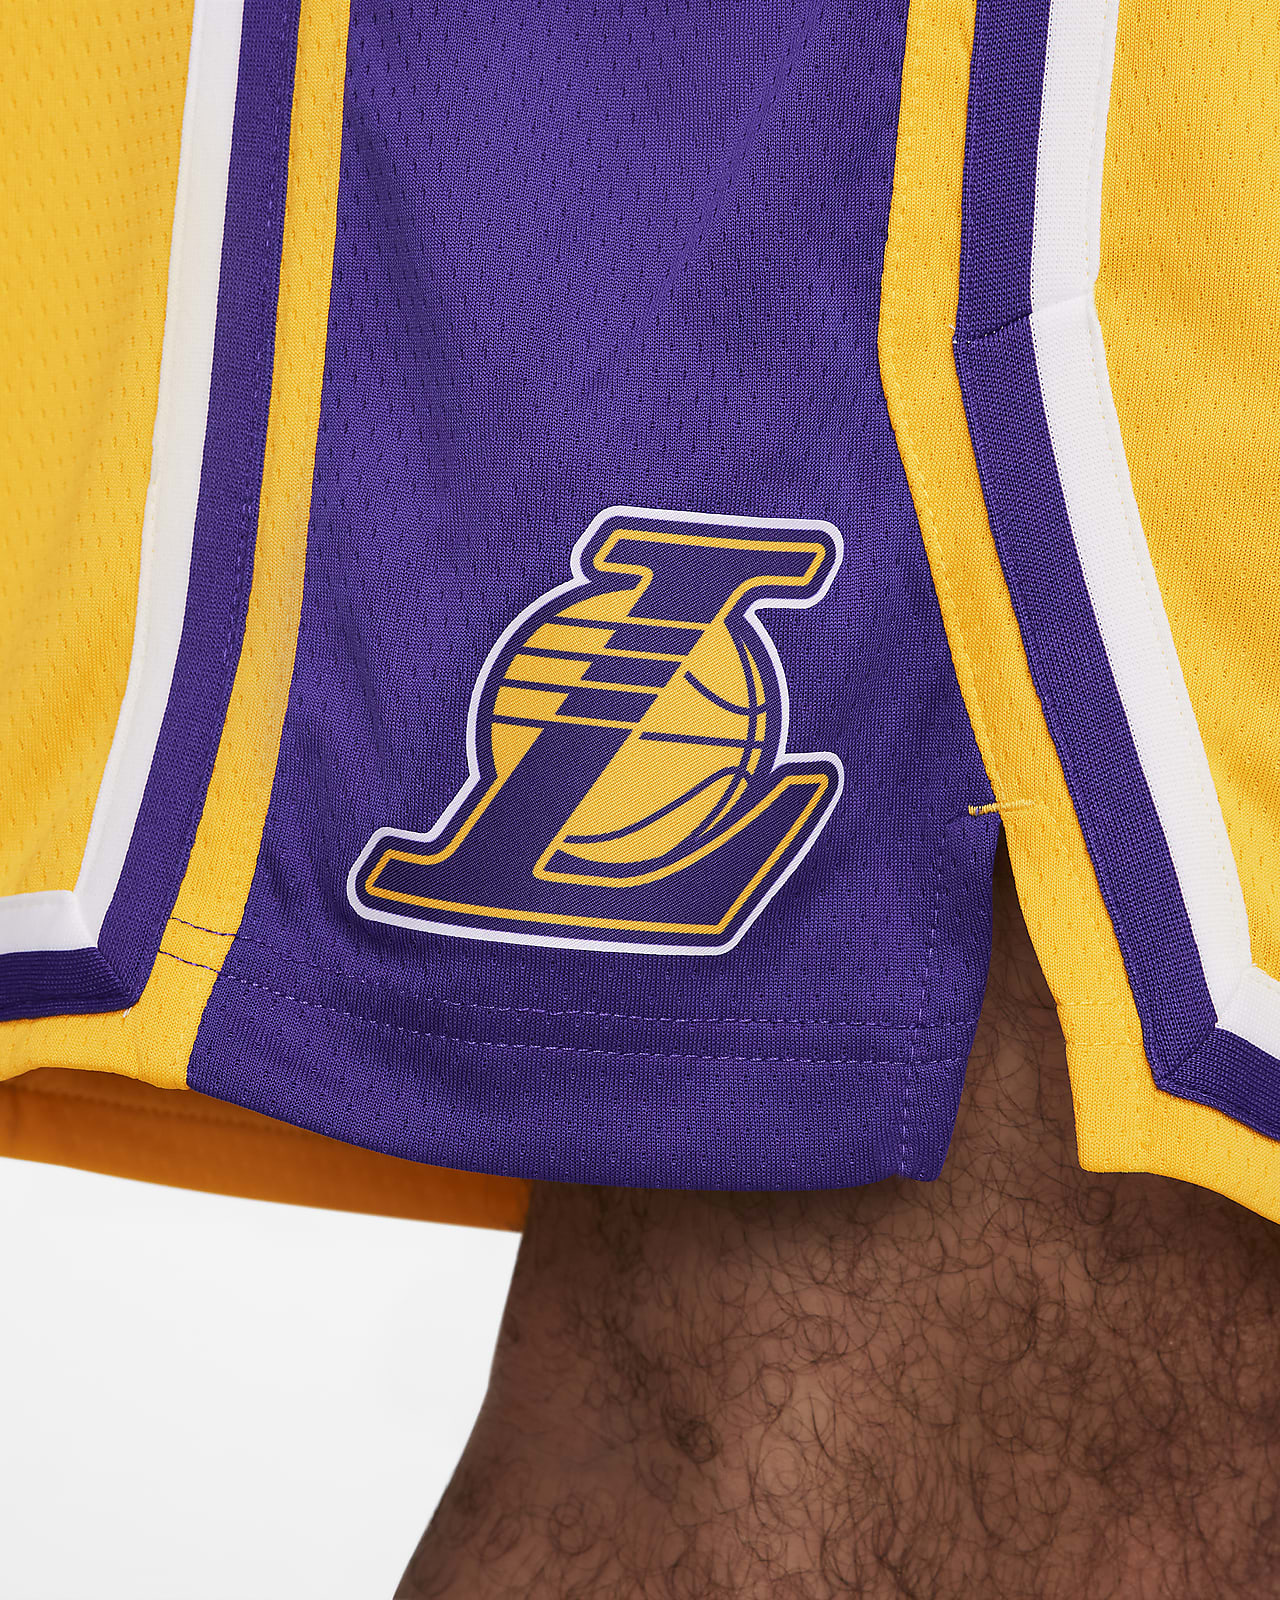 Los Angeles Lakers Jerseys & Gear. Nike CA